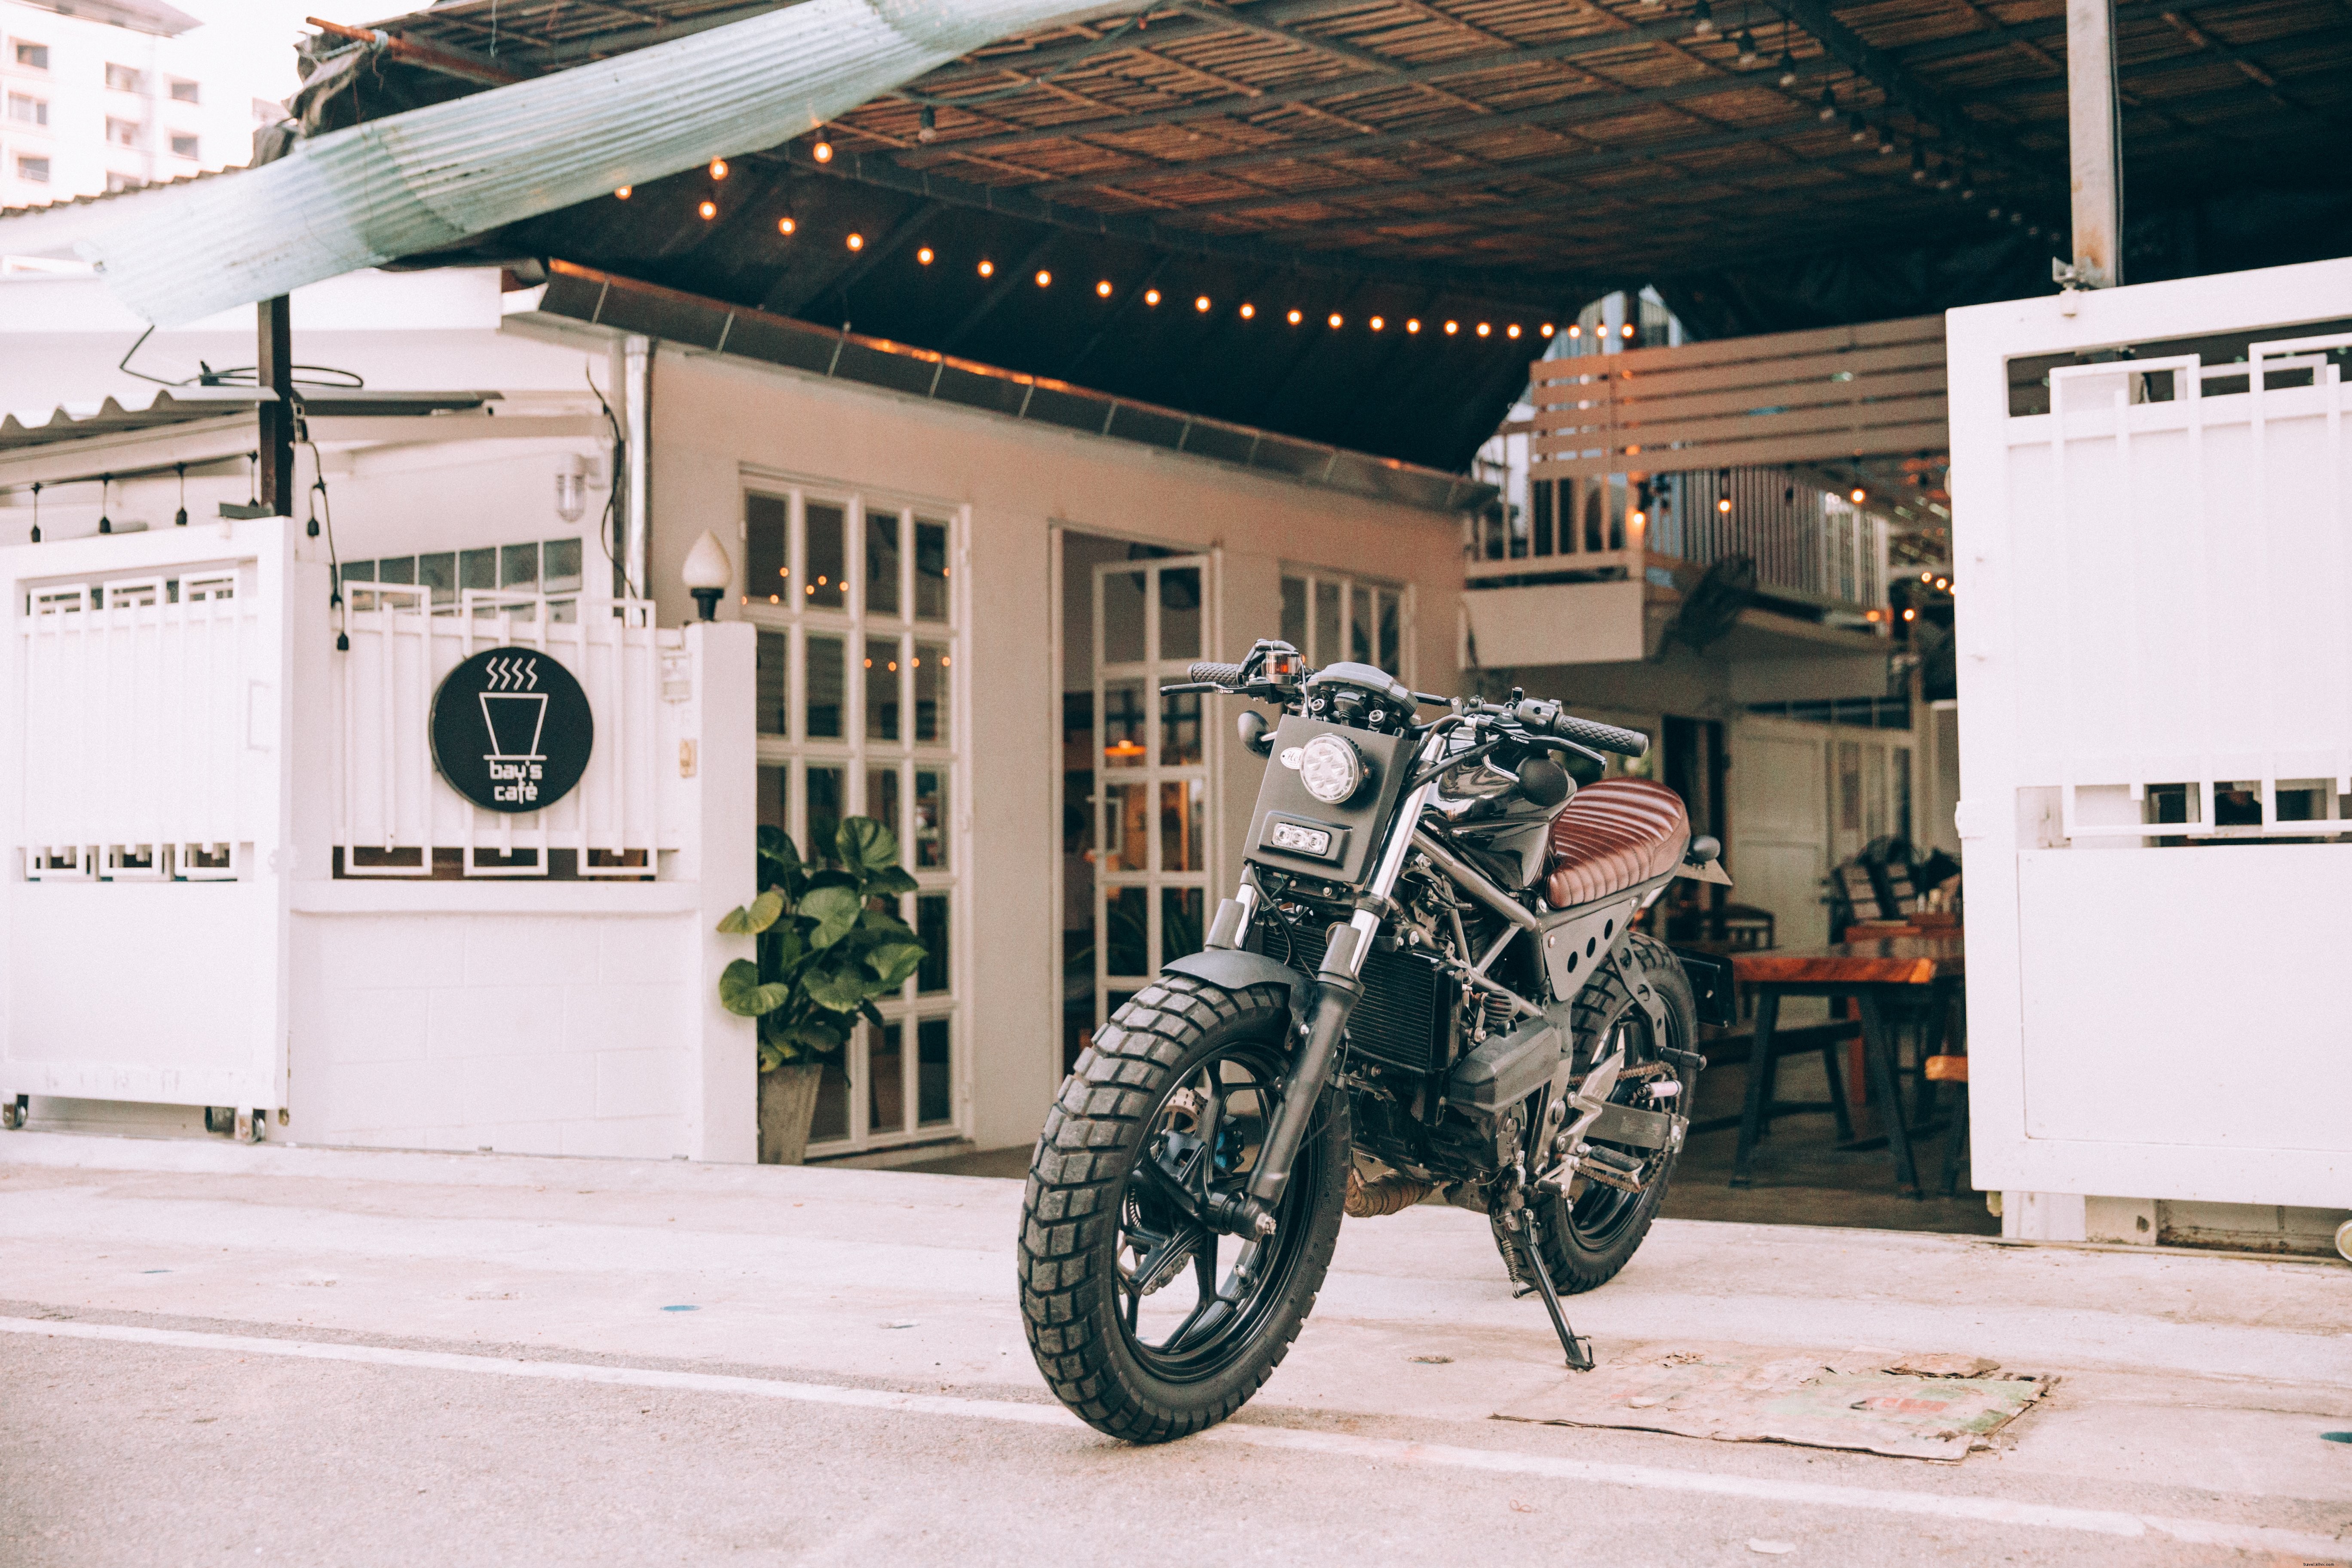 Moto à l extérieur d un café Photo